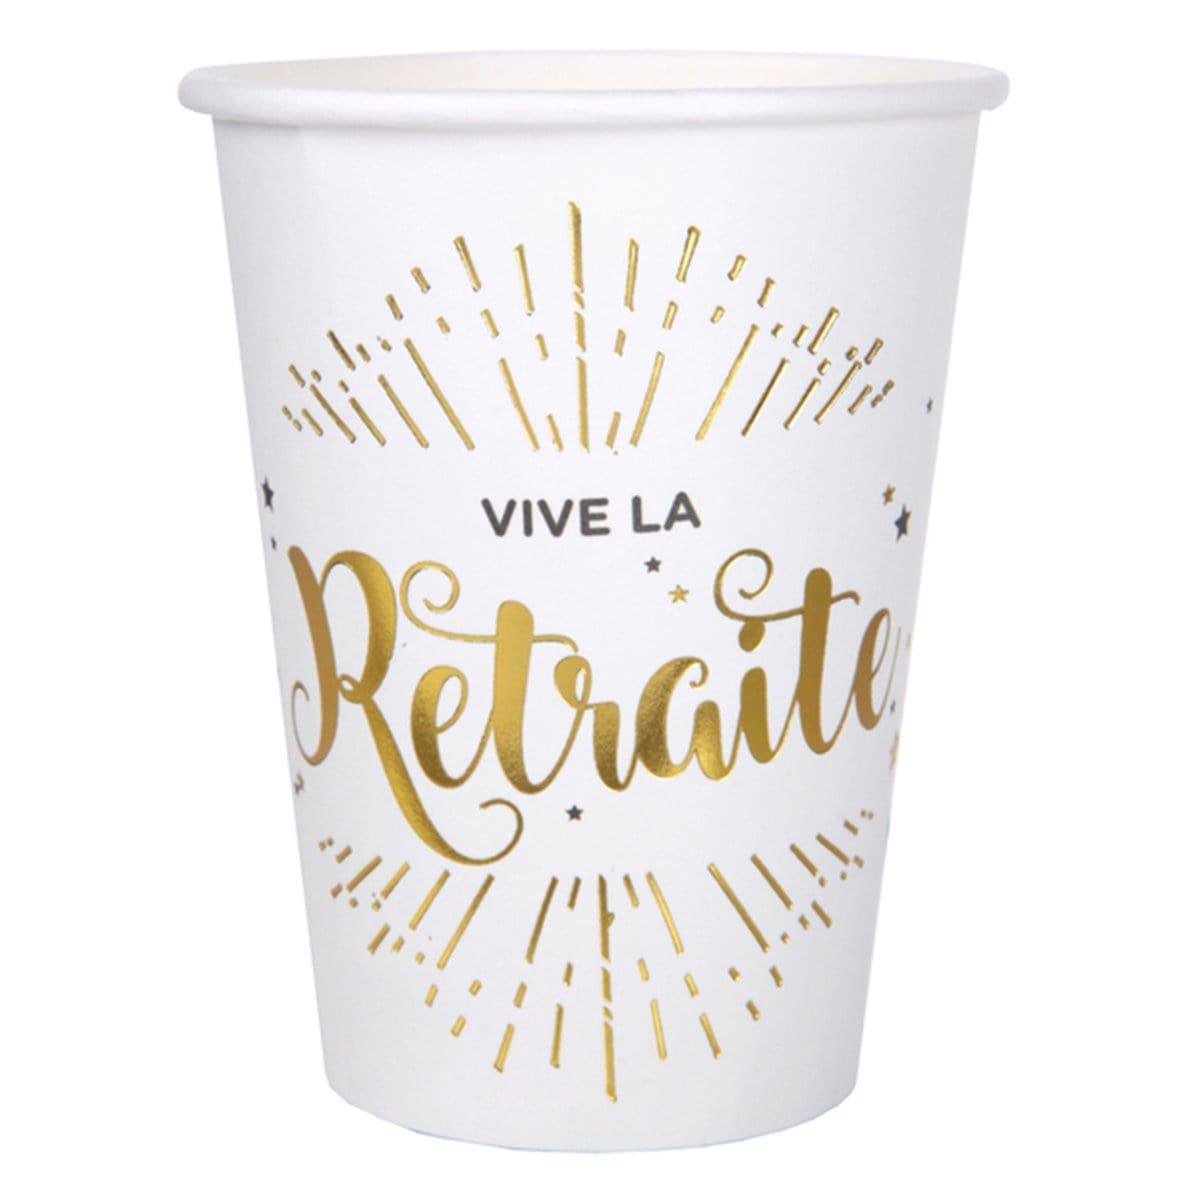 Buy Retirement Vive La Retraite Cups, 10 Count sold at Party Expert